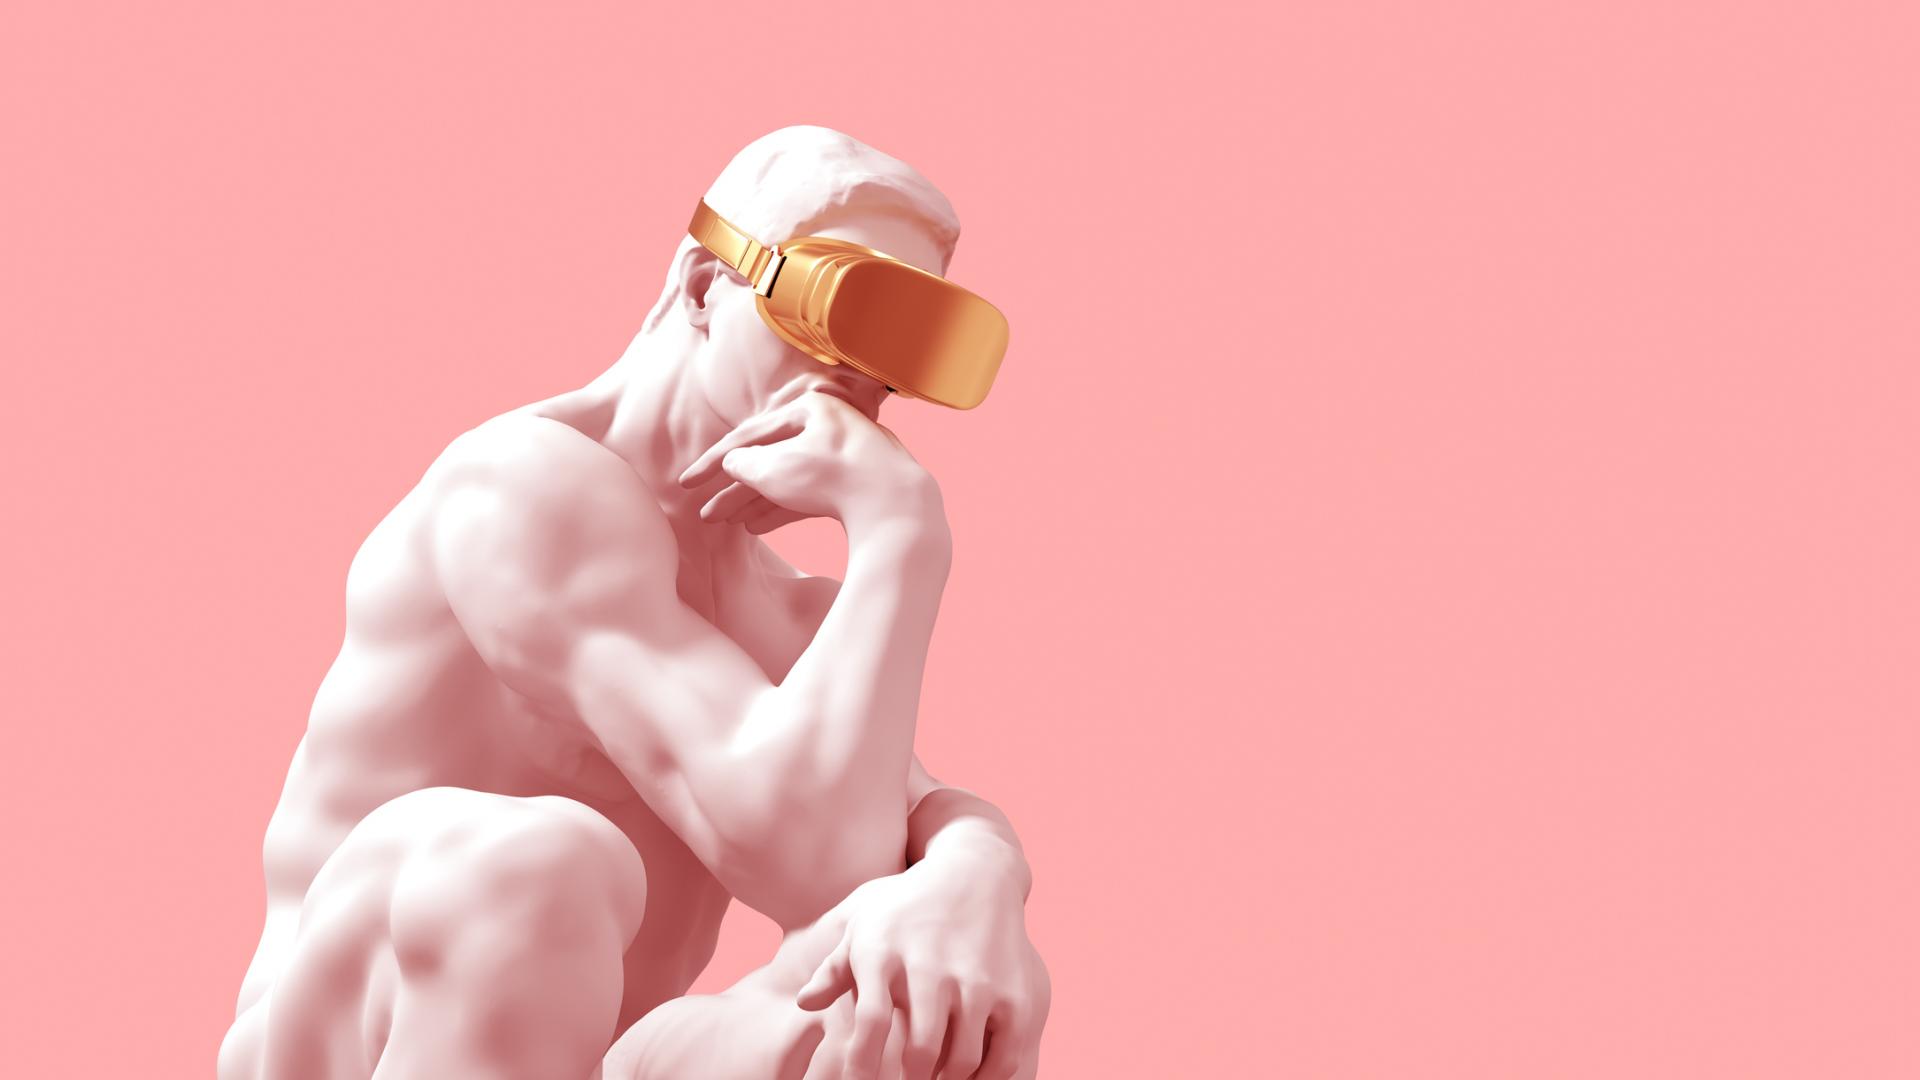 Statue Virtuell Reality